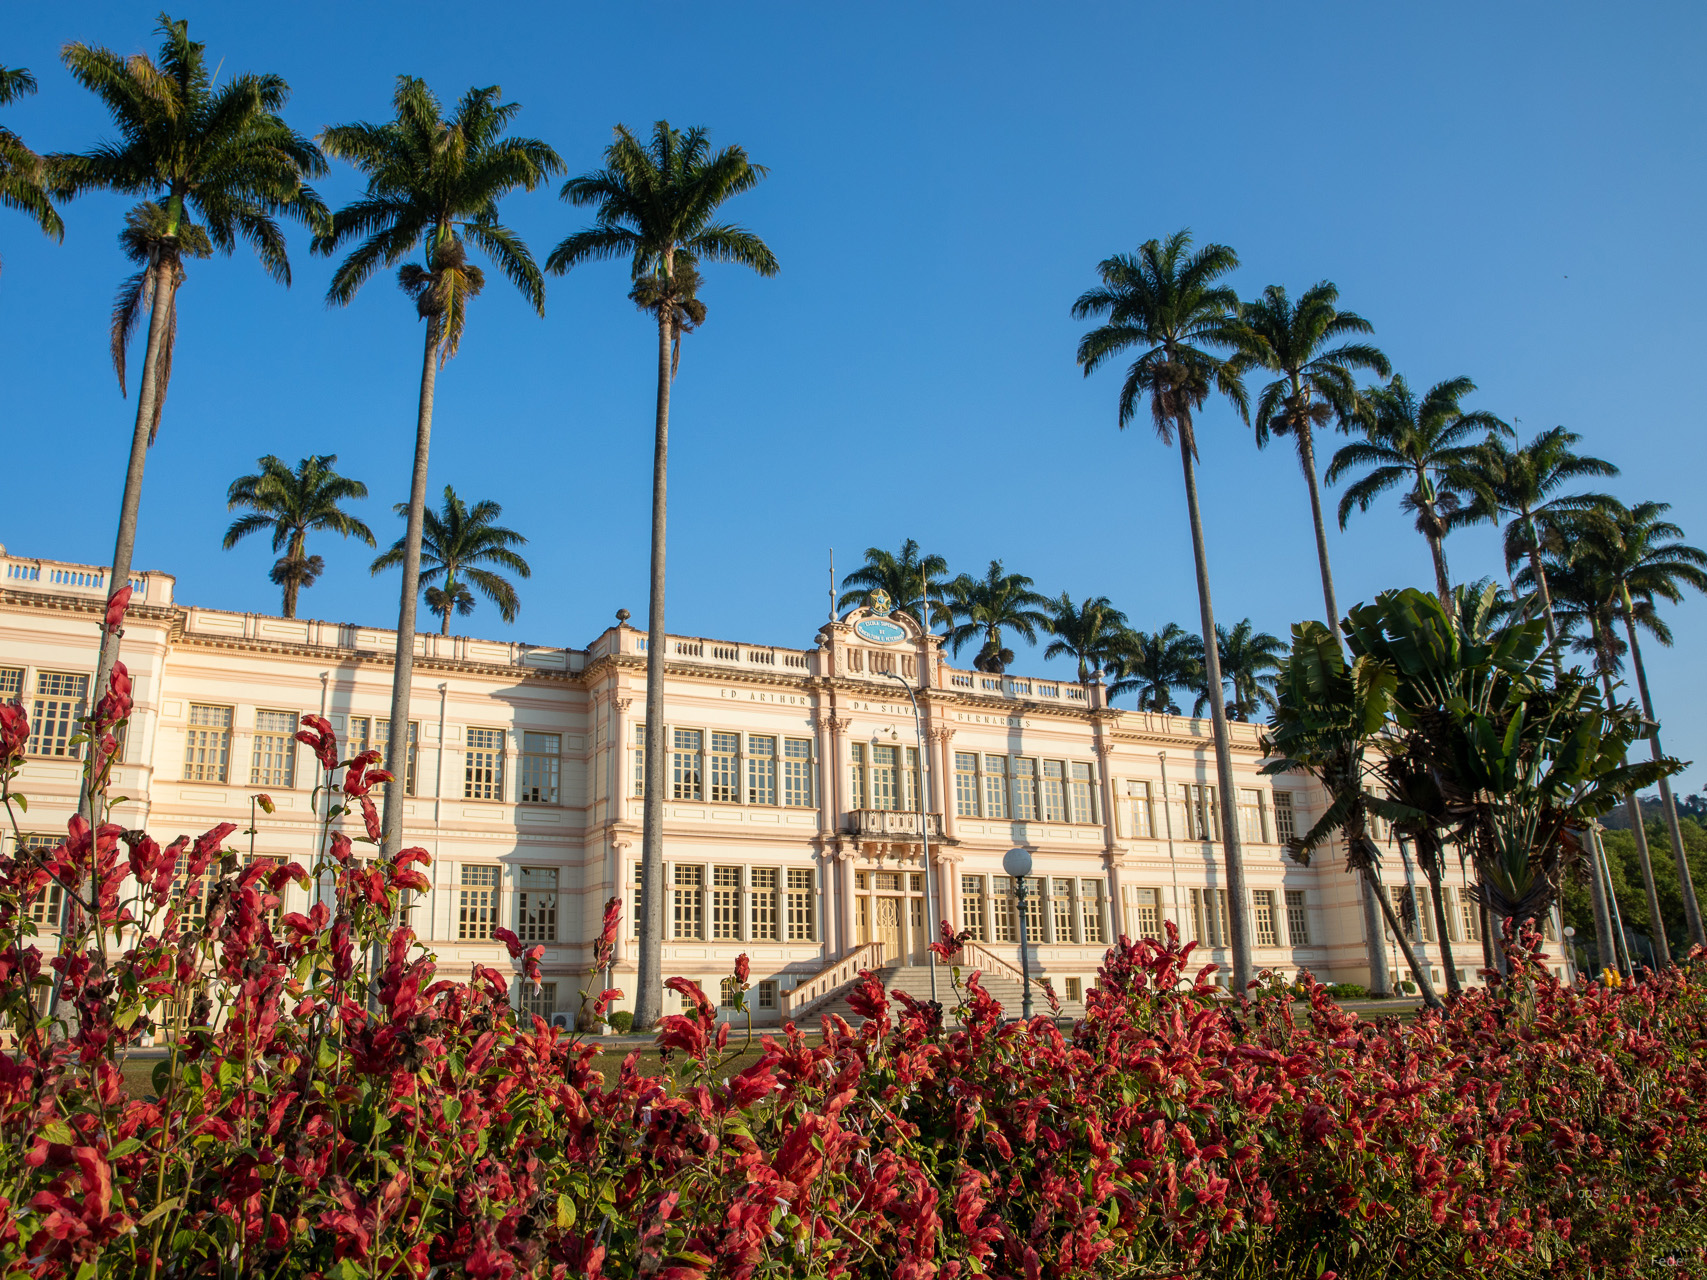 Fachada do prédio principal, rodeado por palmeiras, numa manhã de céu azul. Em frente a ele, canteiro com flores vermelhas. 